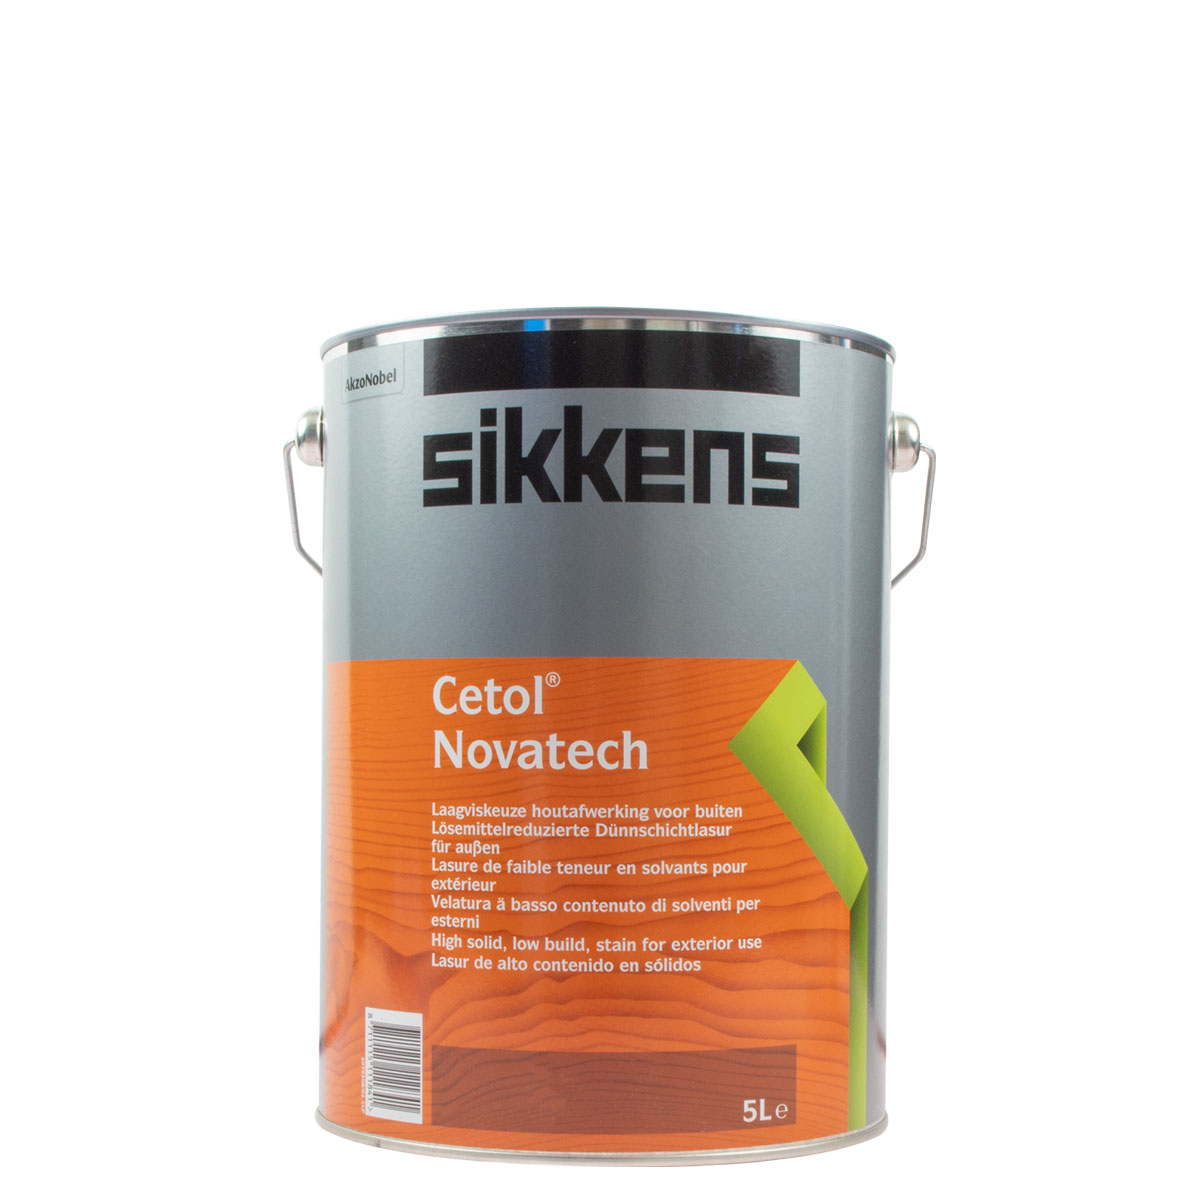 Sikkens Cetol Novatech teak 085 5L ,High-Solid Lasur